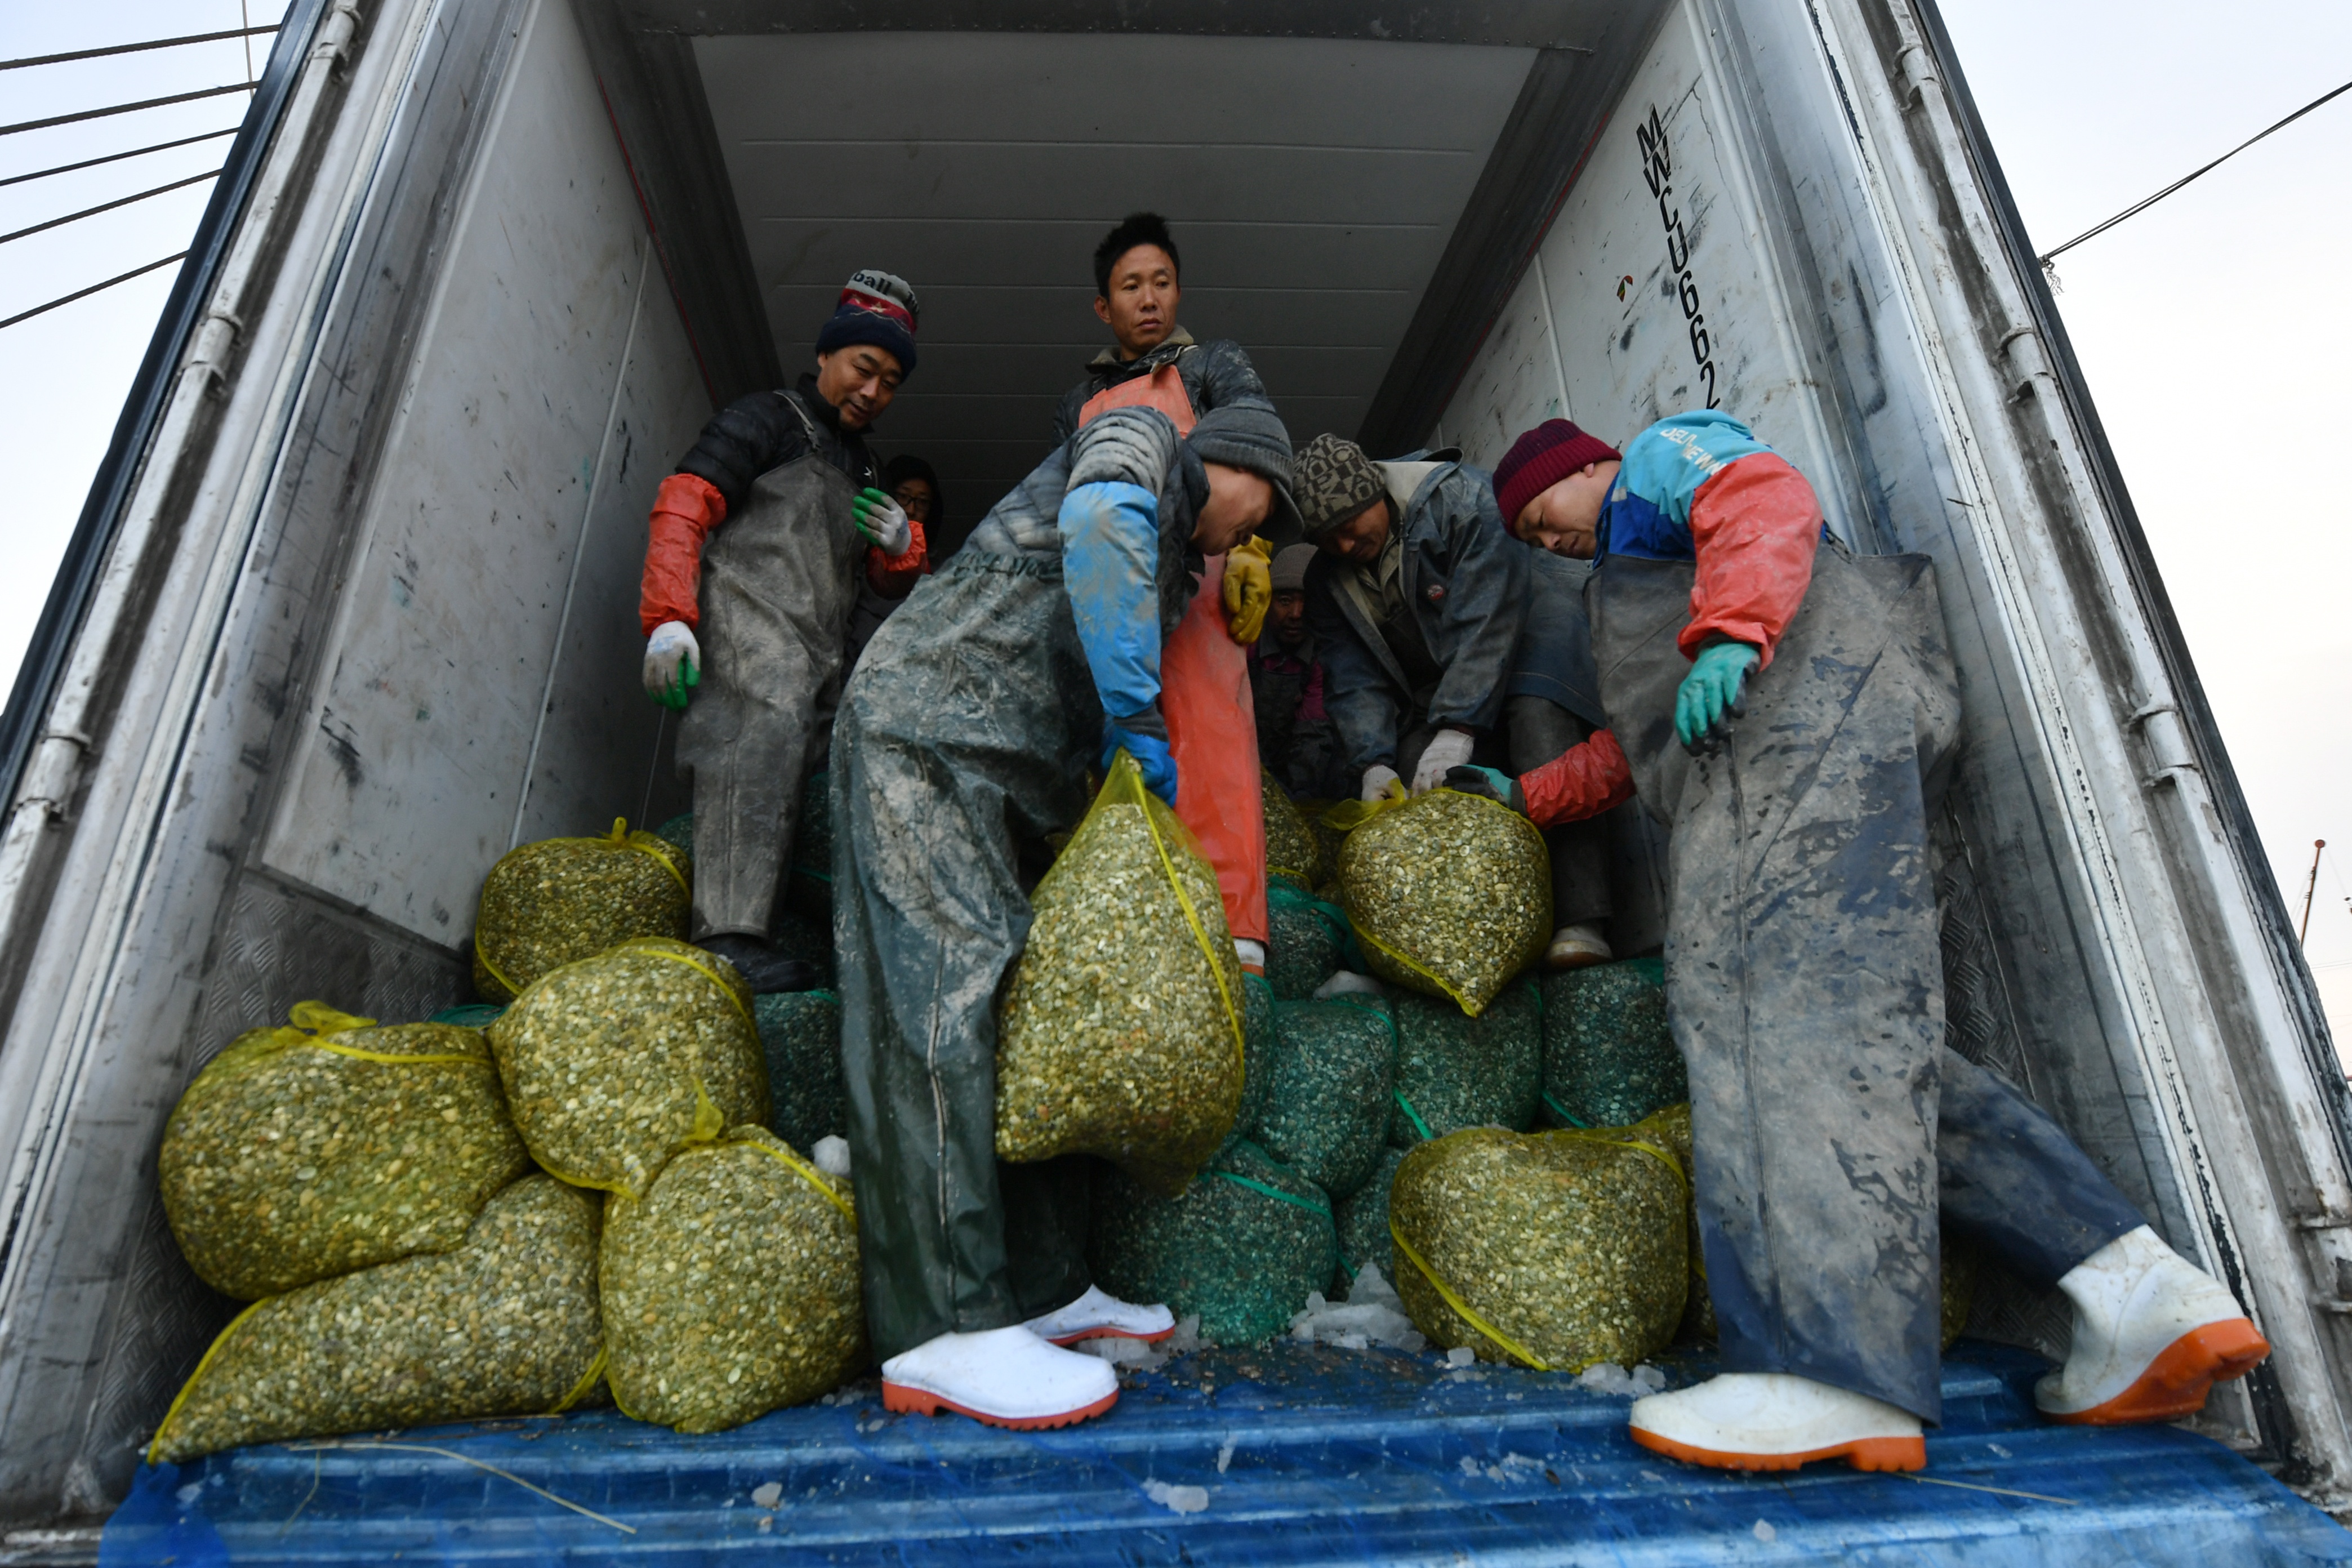 胶州湾海星减少 渔民恢复春季生产